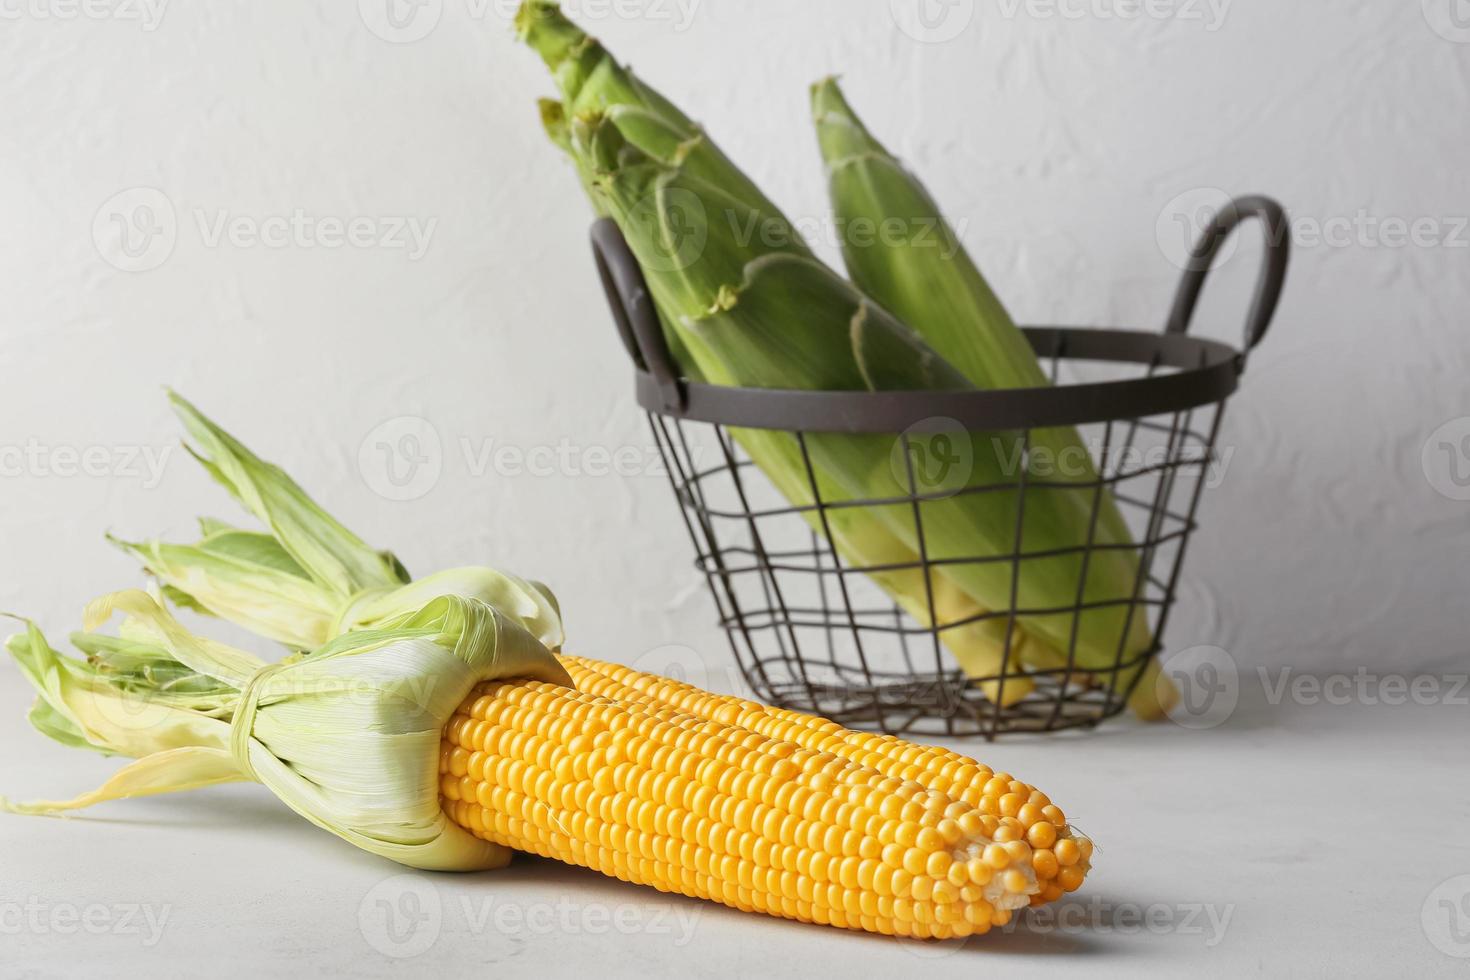 mazorcas de maíz frescas sobre fondo claro foto